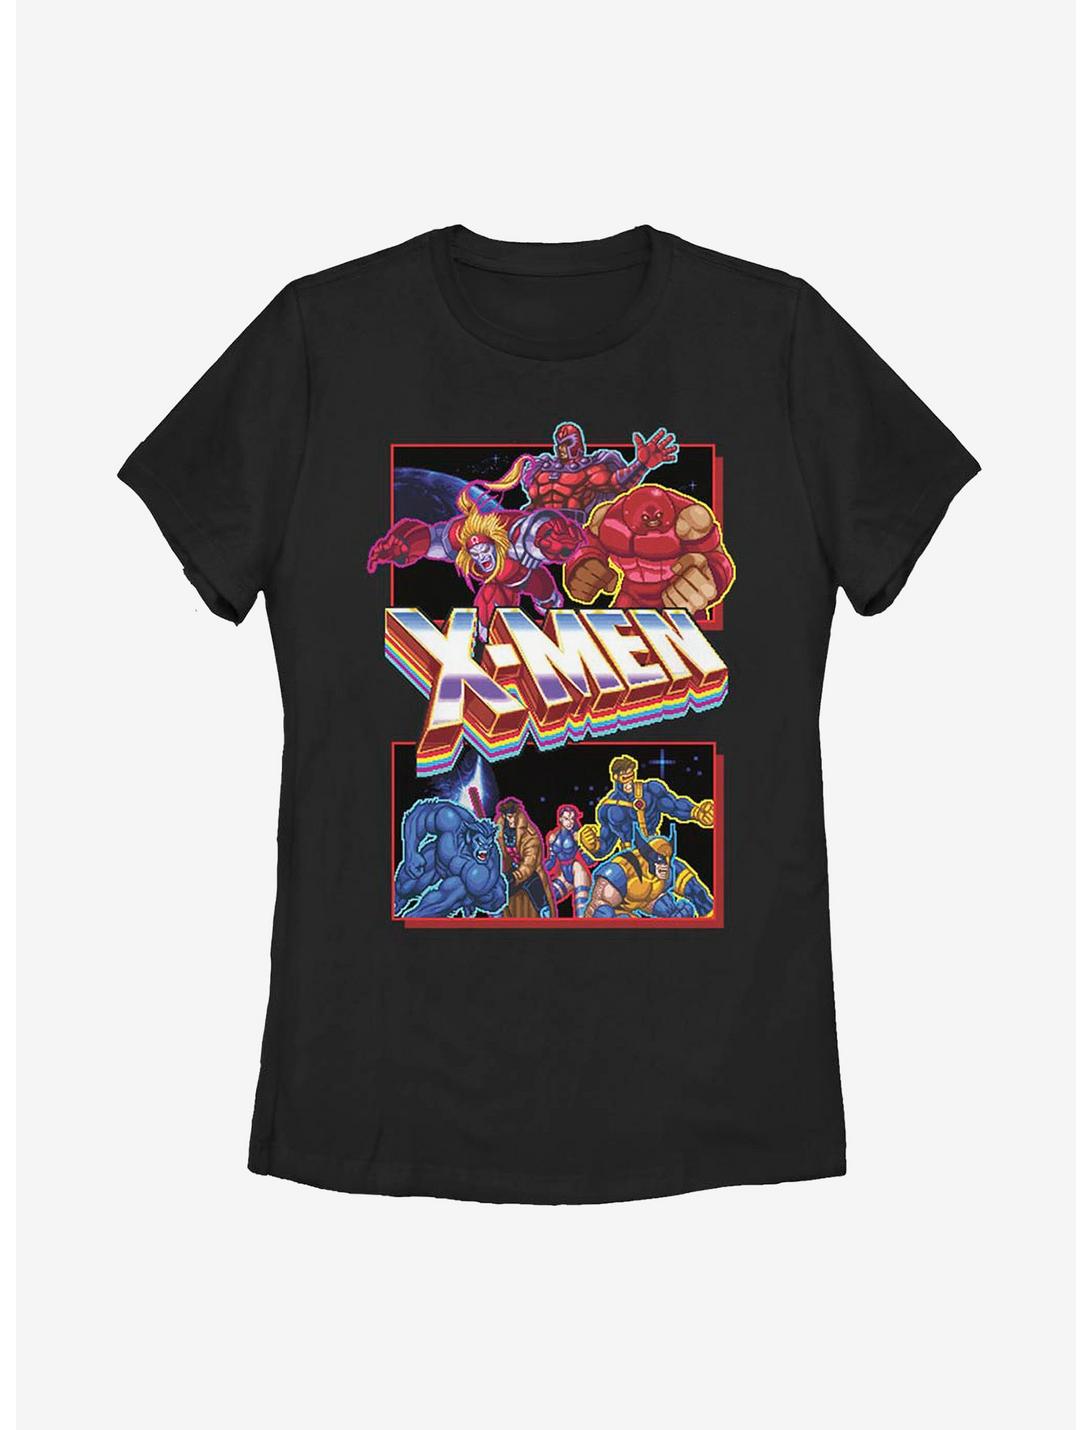 Marvel X-Men X-Men Arcade Fight Womens T-Shirt, BLACK, hi-res